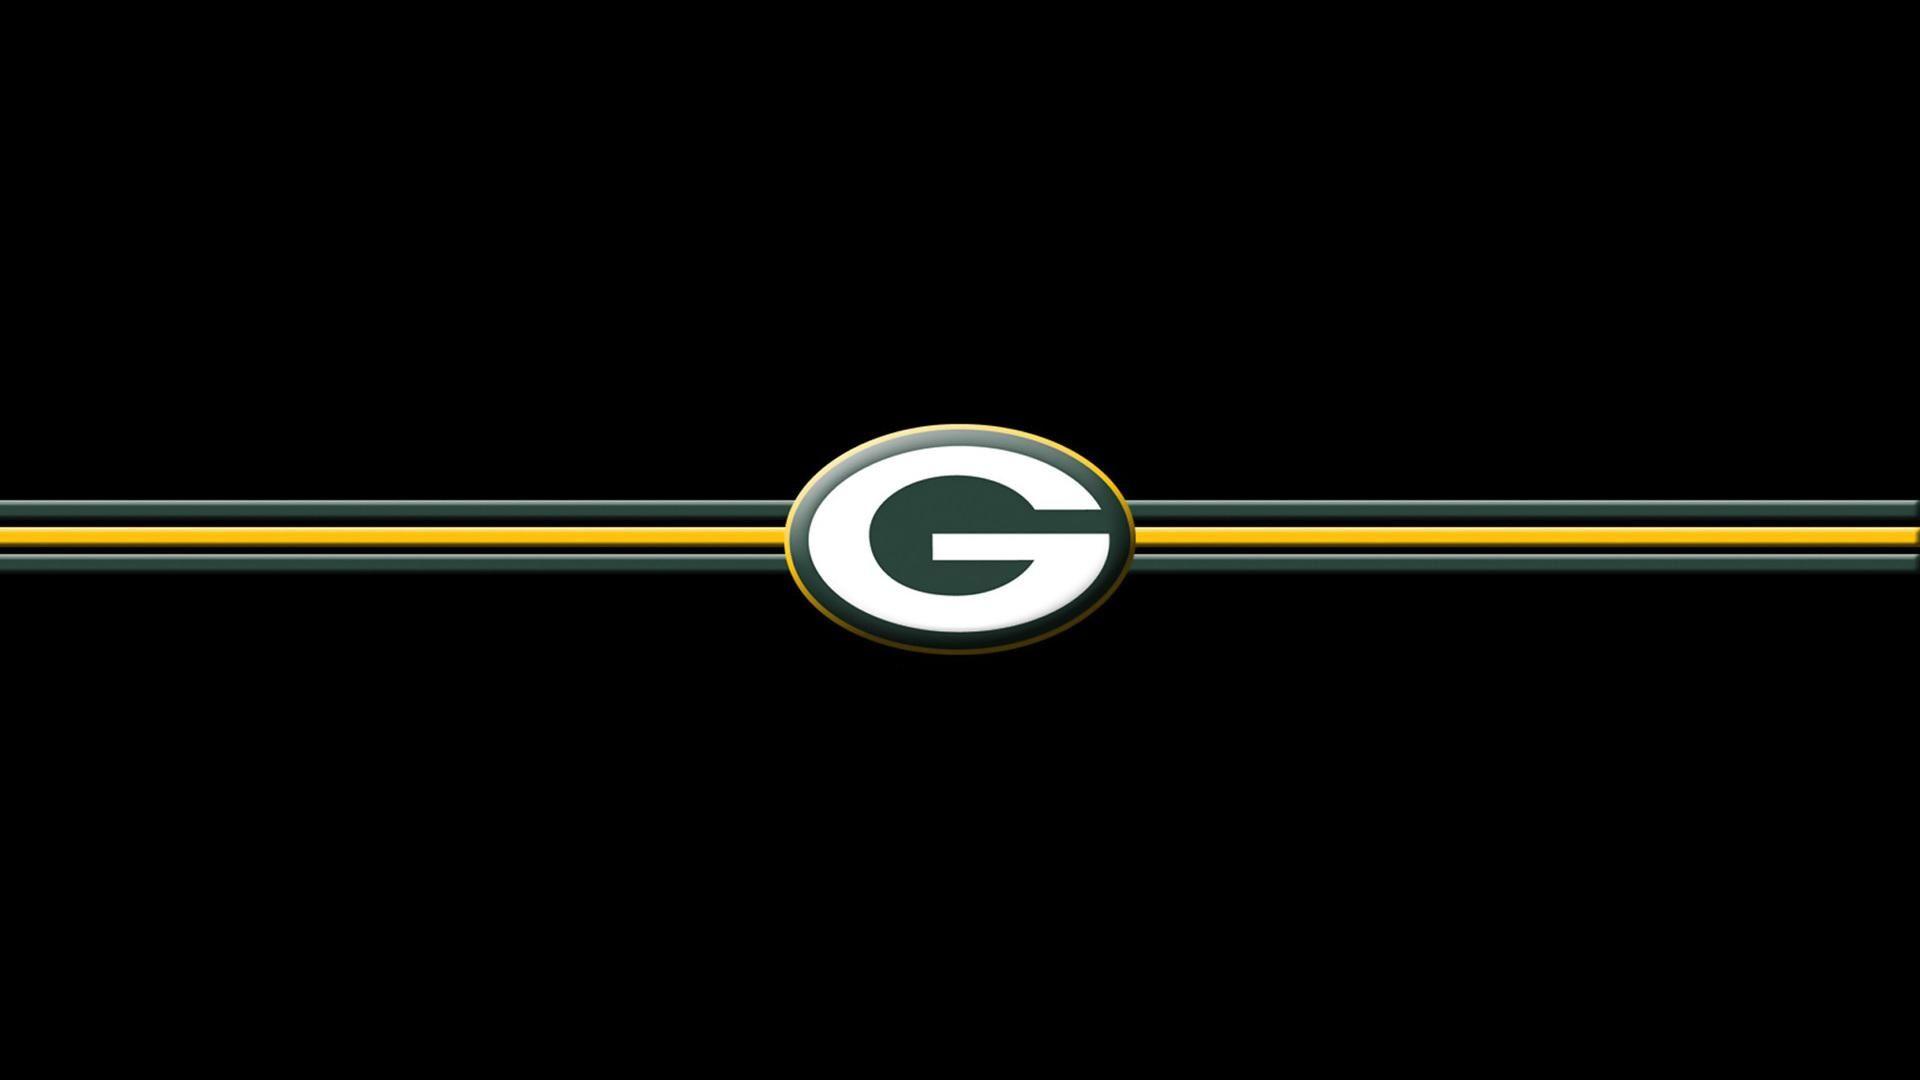 Green Bay Packers HD desktop wallpaper, Widescreen, High